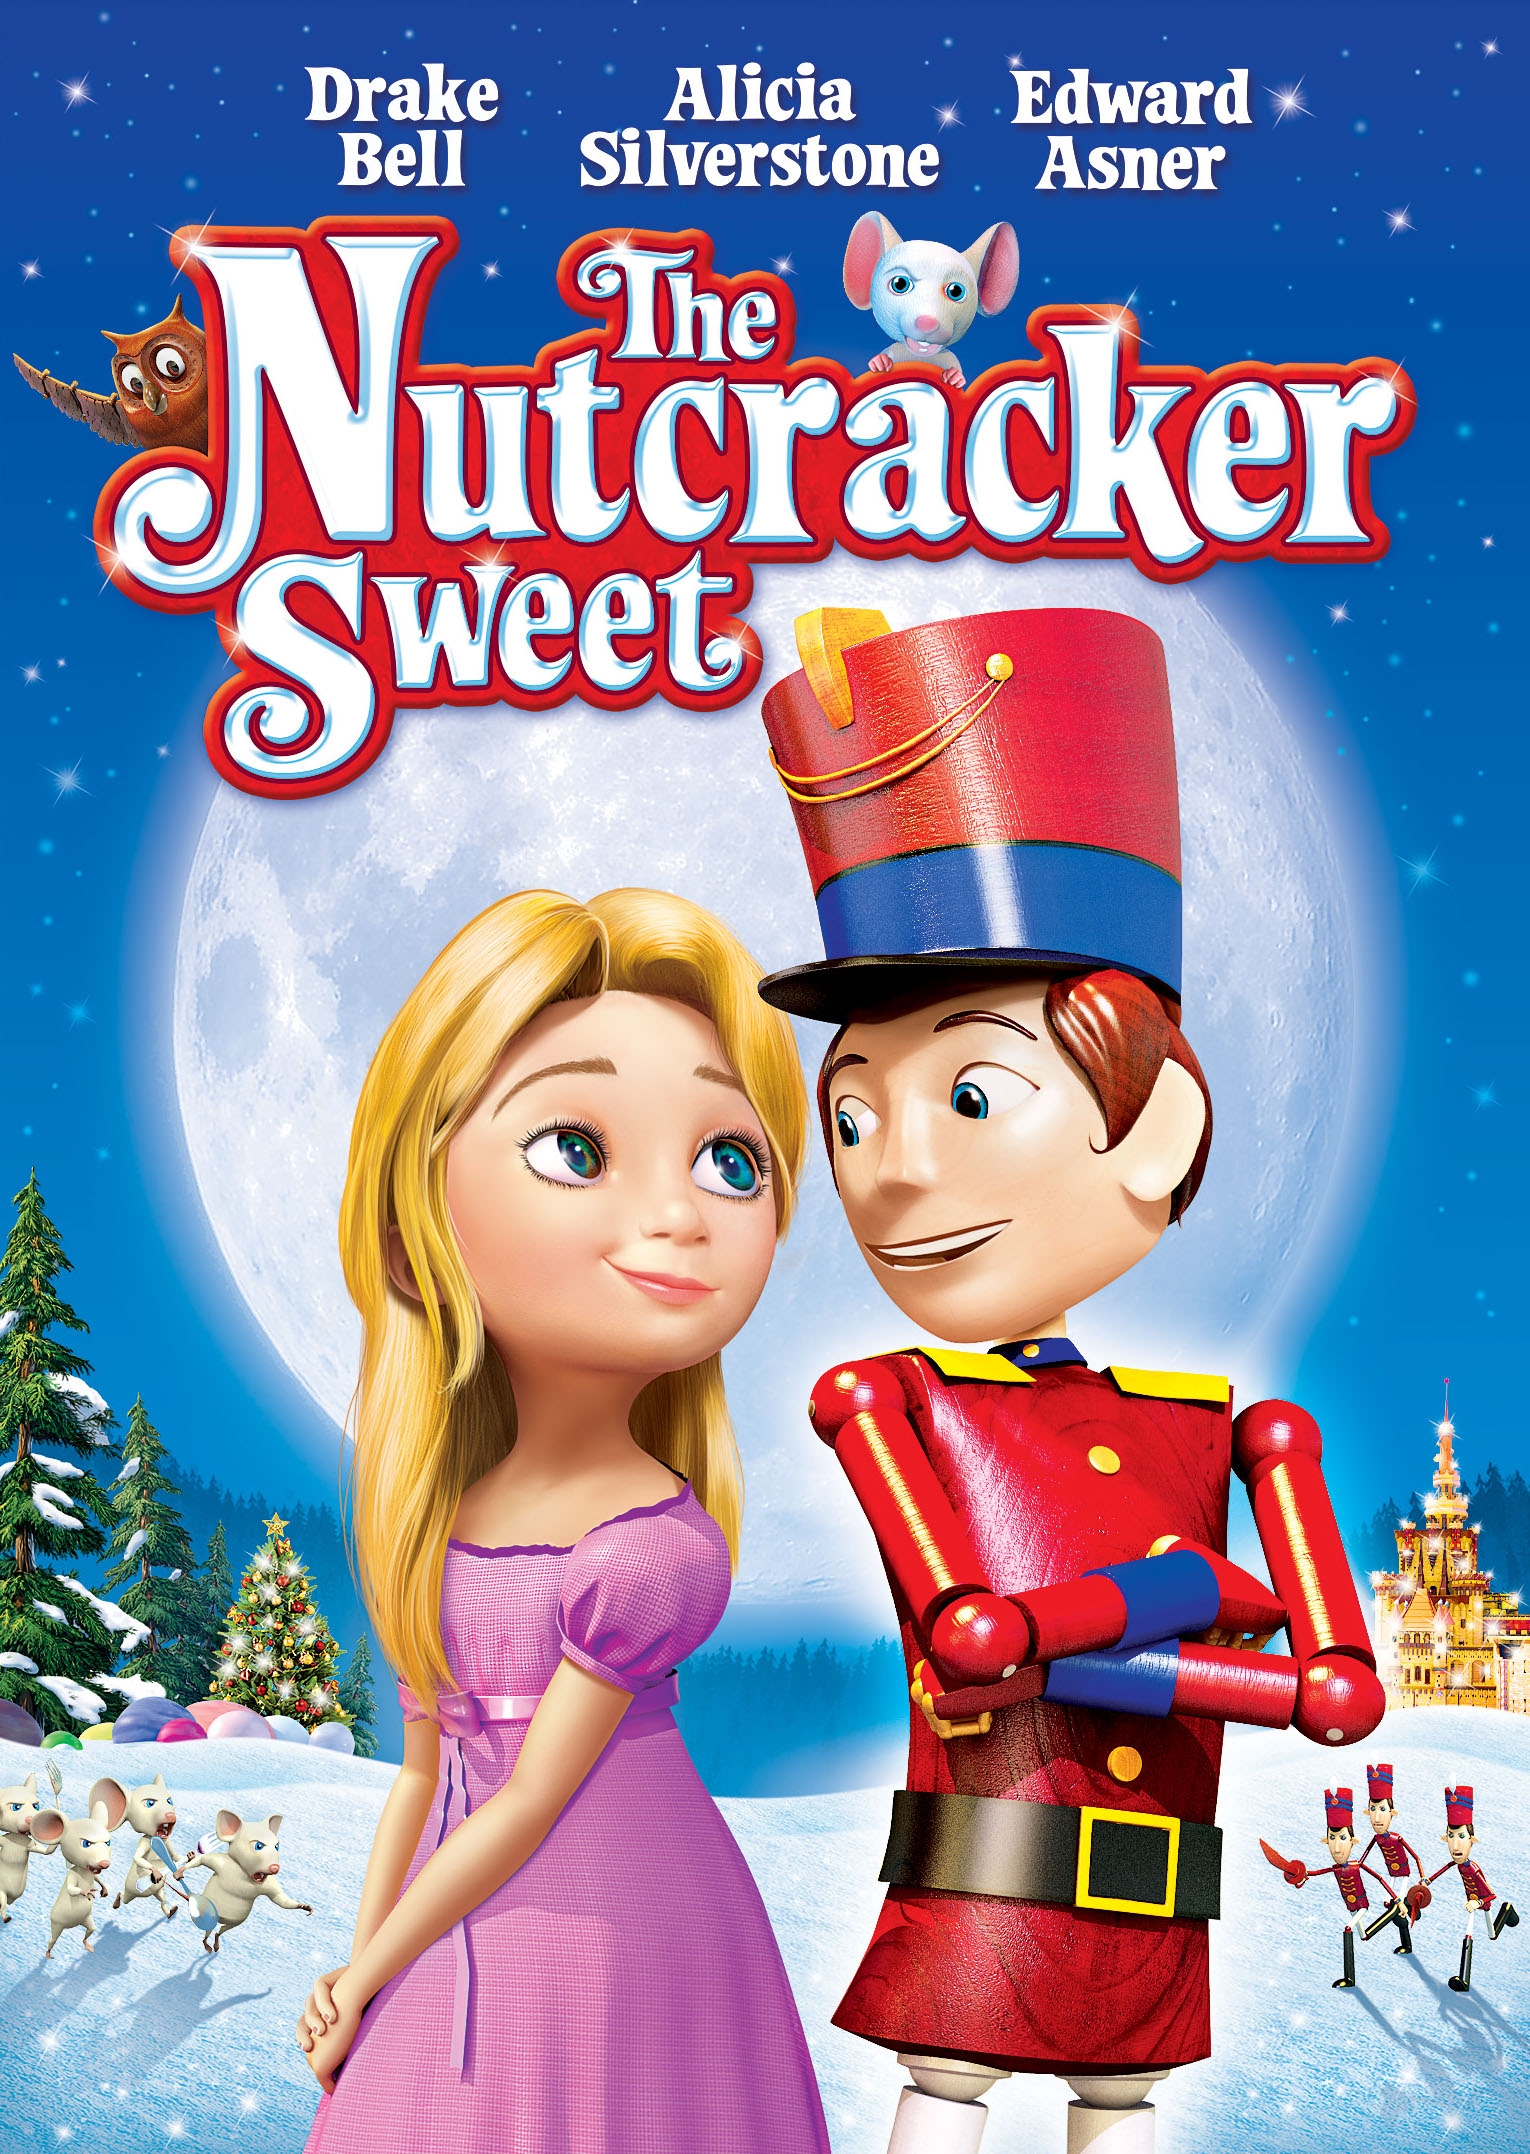 The Nutcracker Sweet (2015)